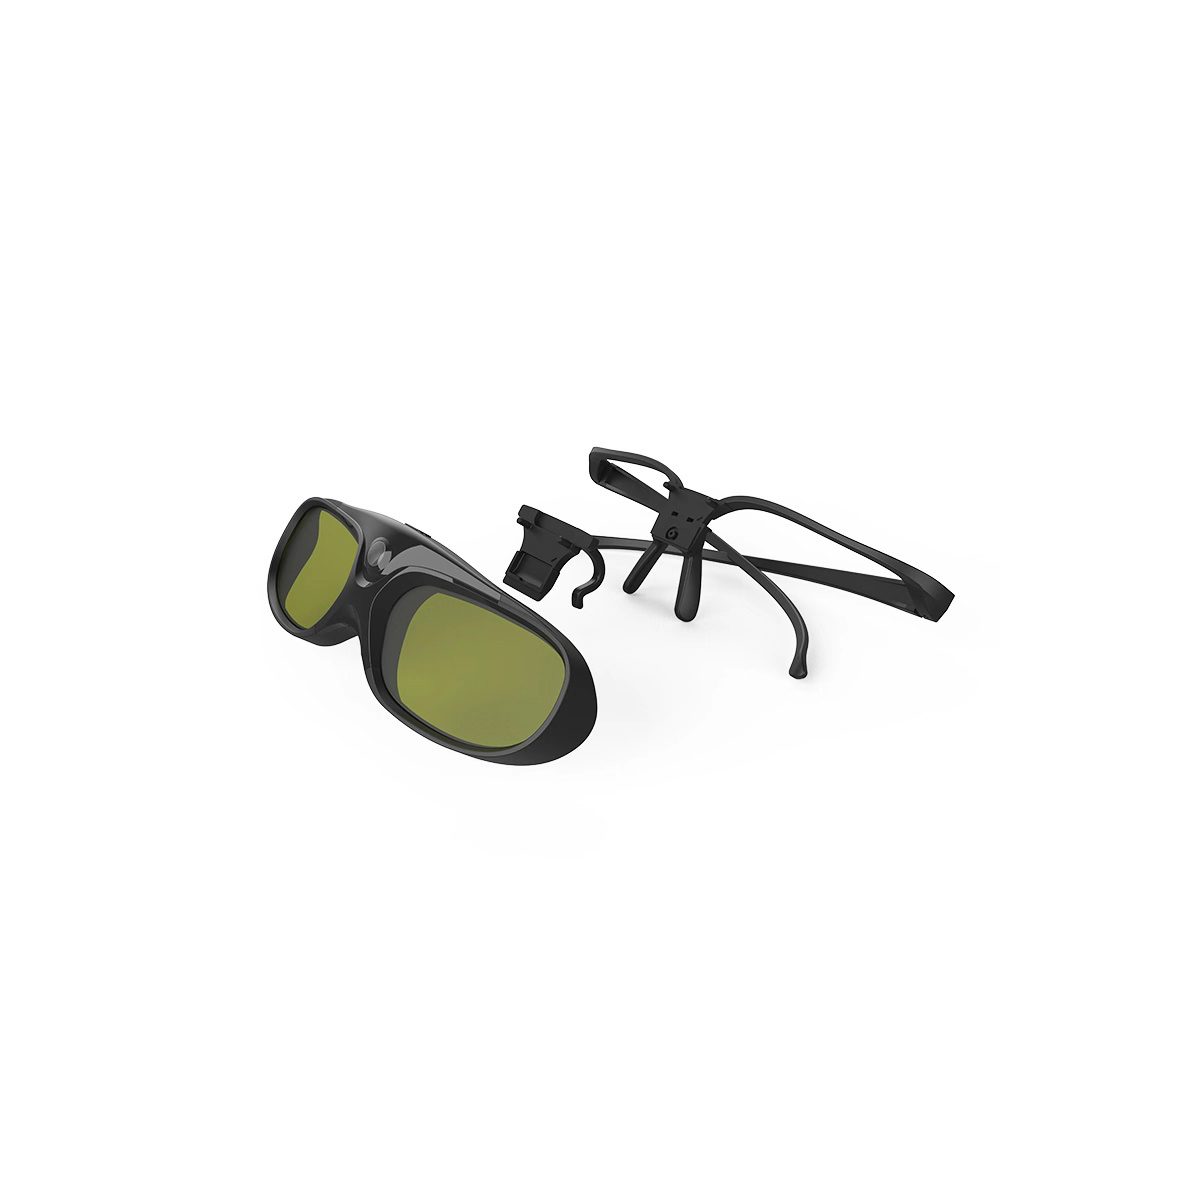 Active Shatter 3D Glasses, DLP-Link